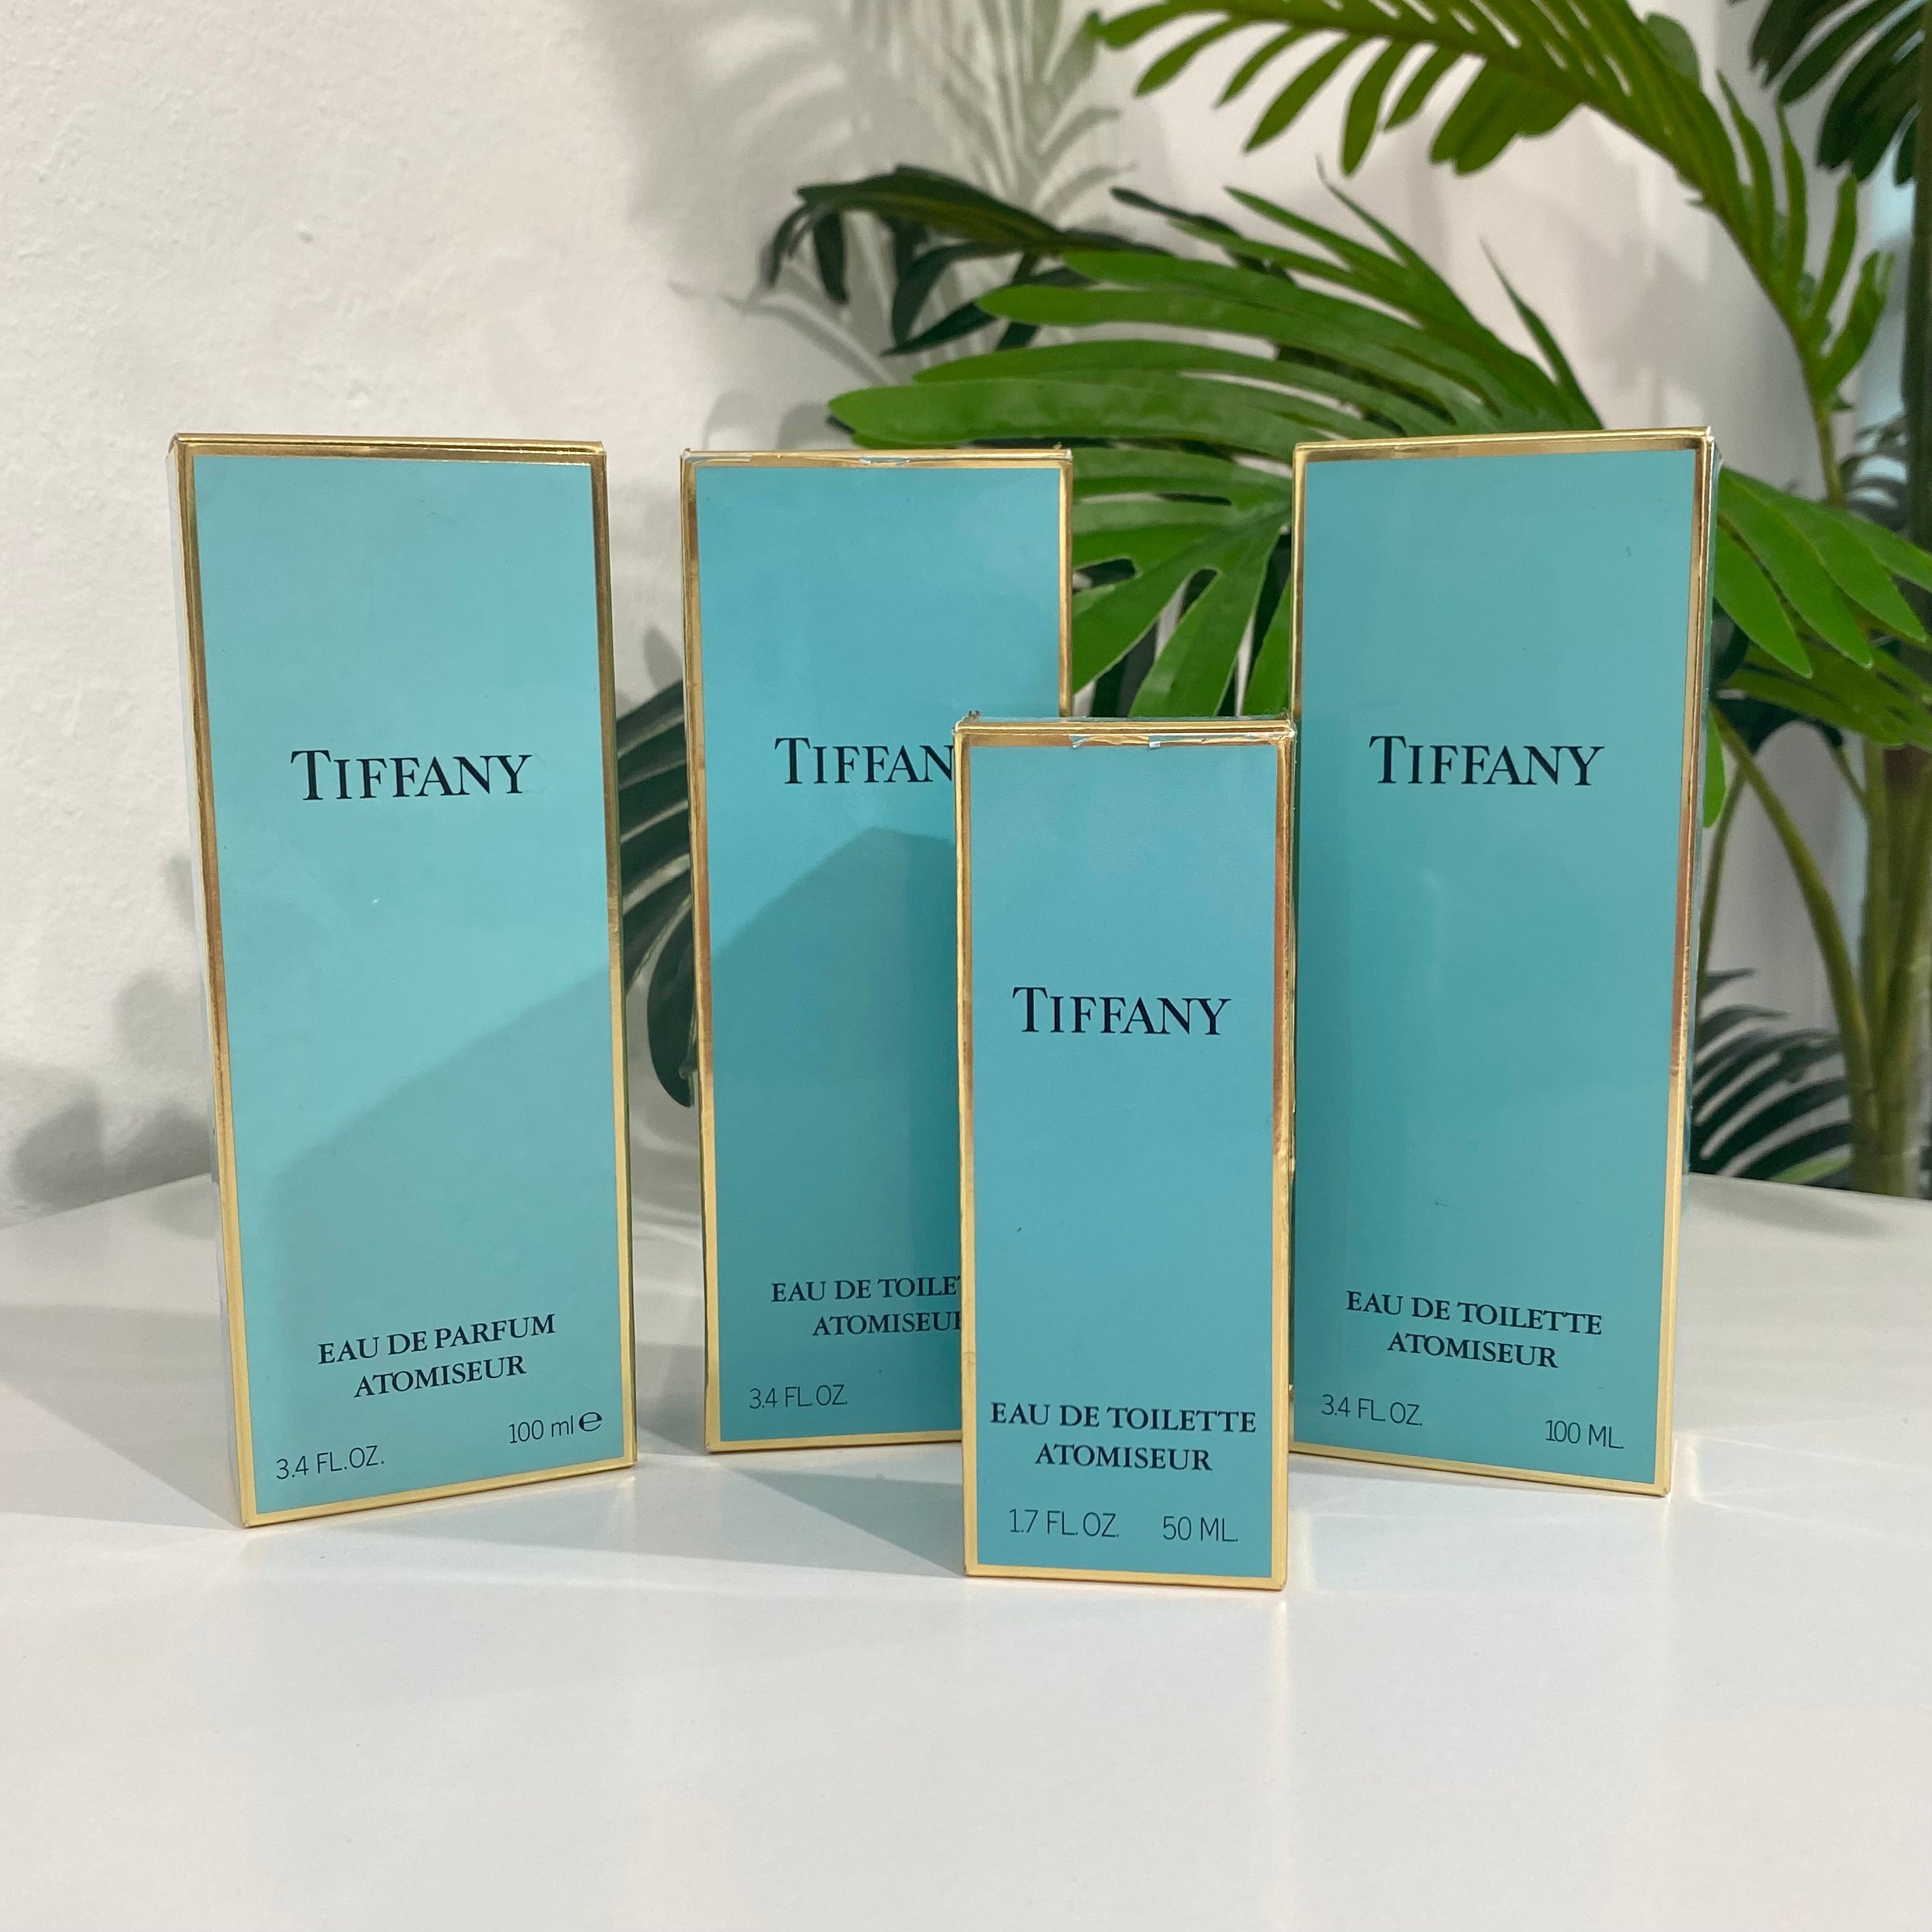 NEW Tiffany Eau de Parfum Atomiseur 3.4 FL OZ. 100 ml